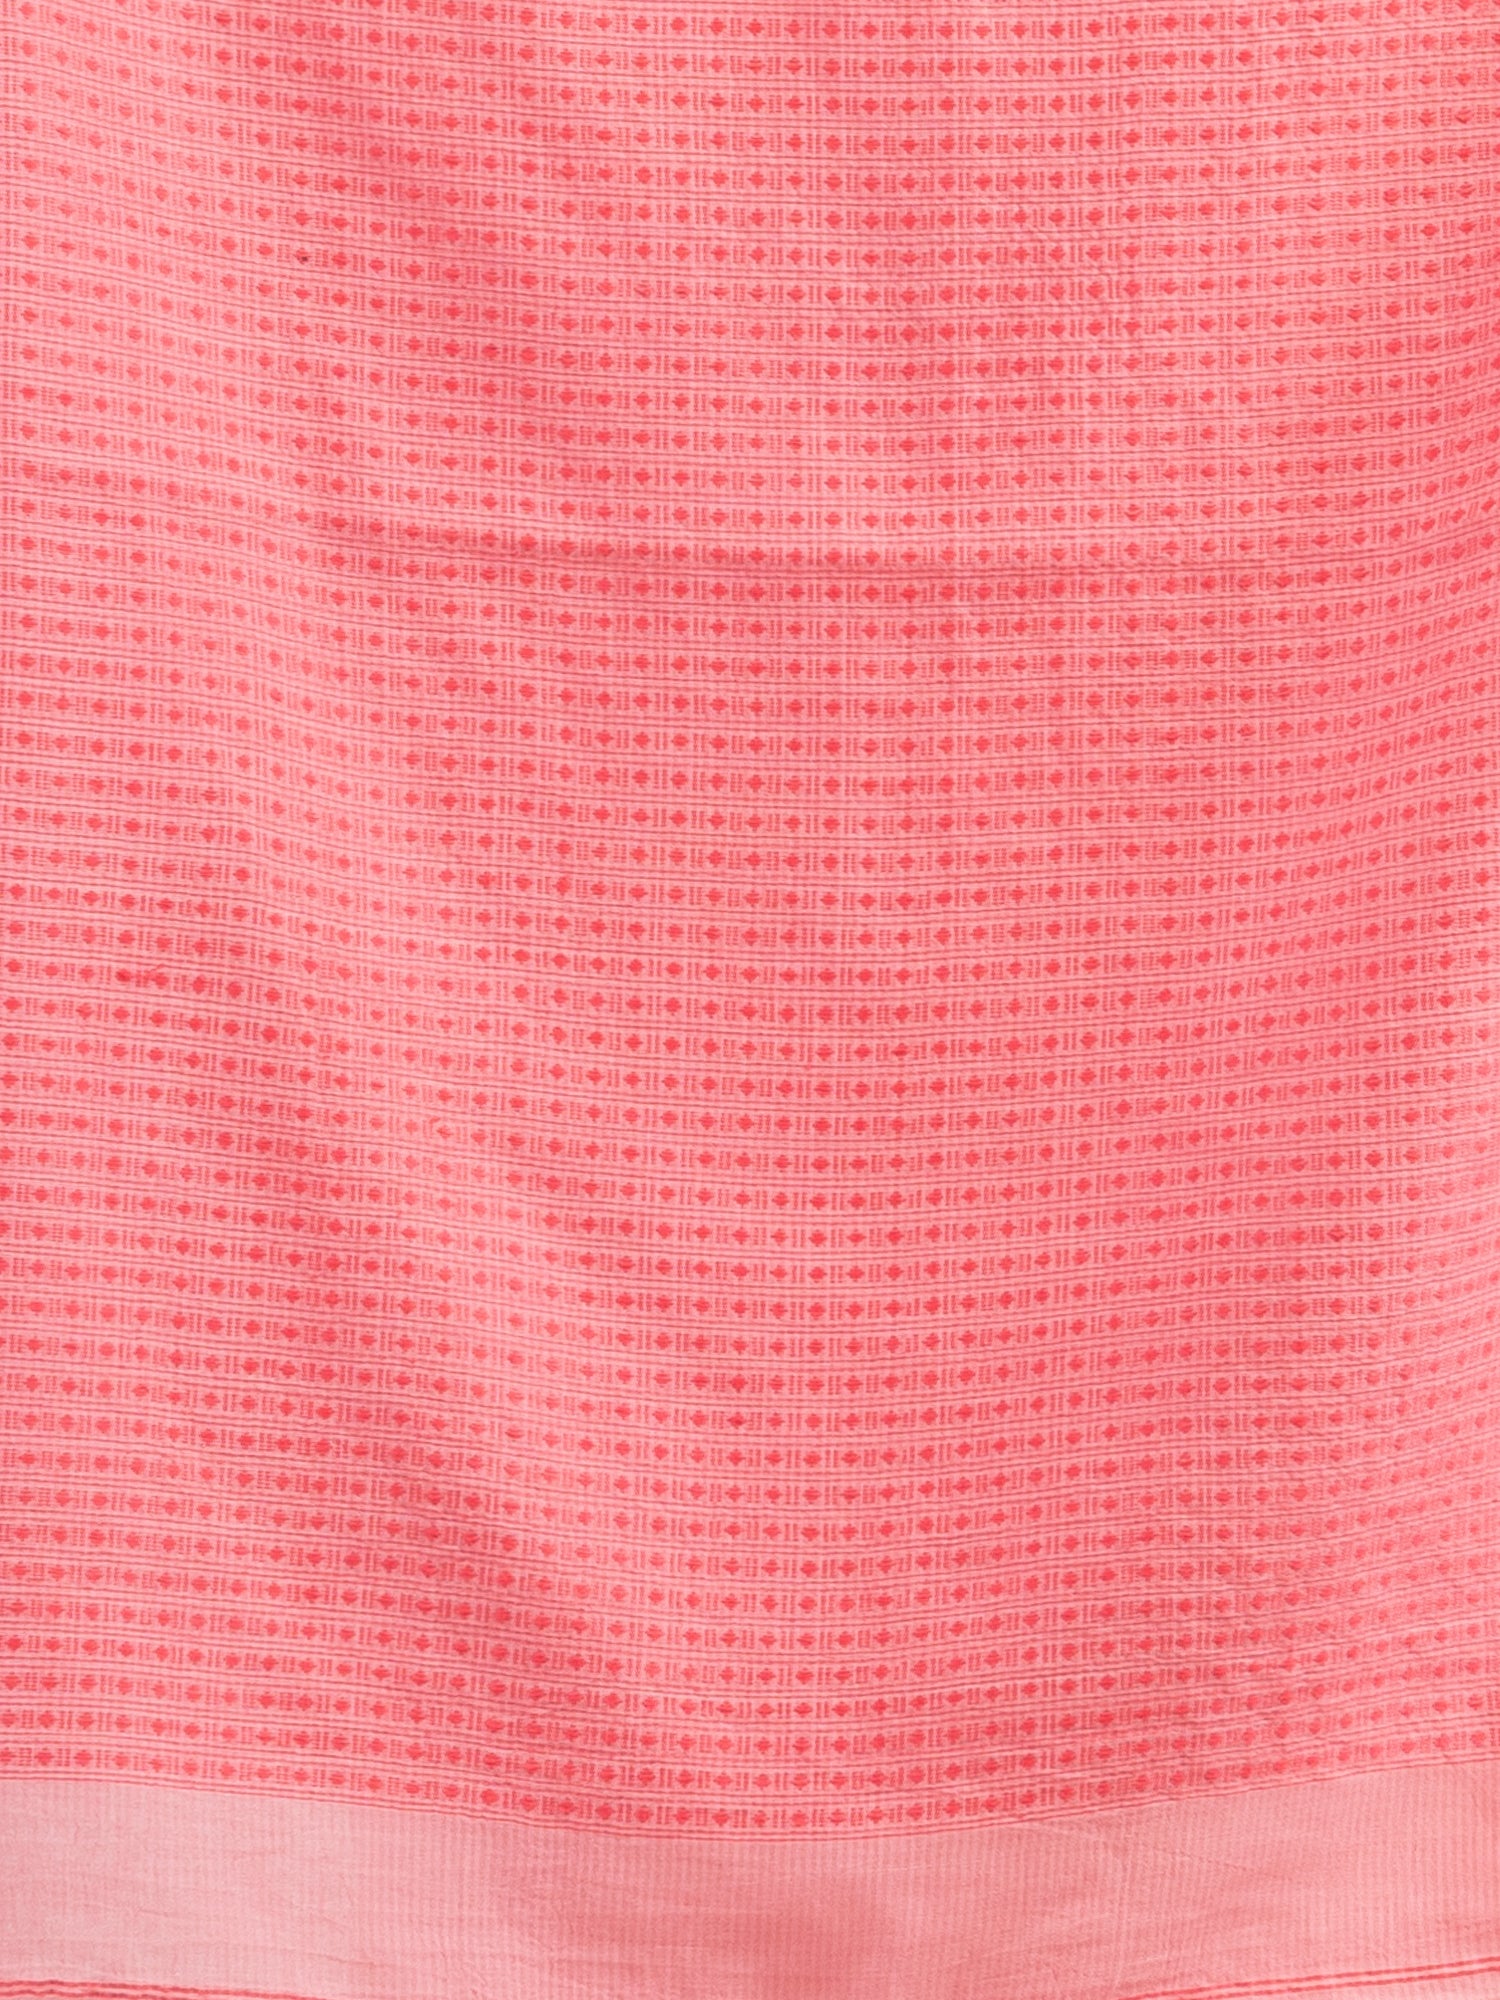 Women's Quartz Pink resham cotton kota check all over Buti jacquqrd Pallu handwoven saree - Angoshobha